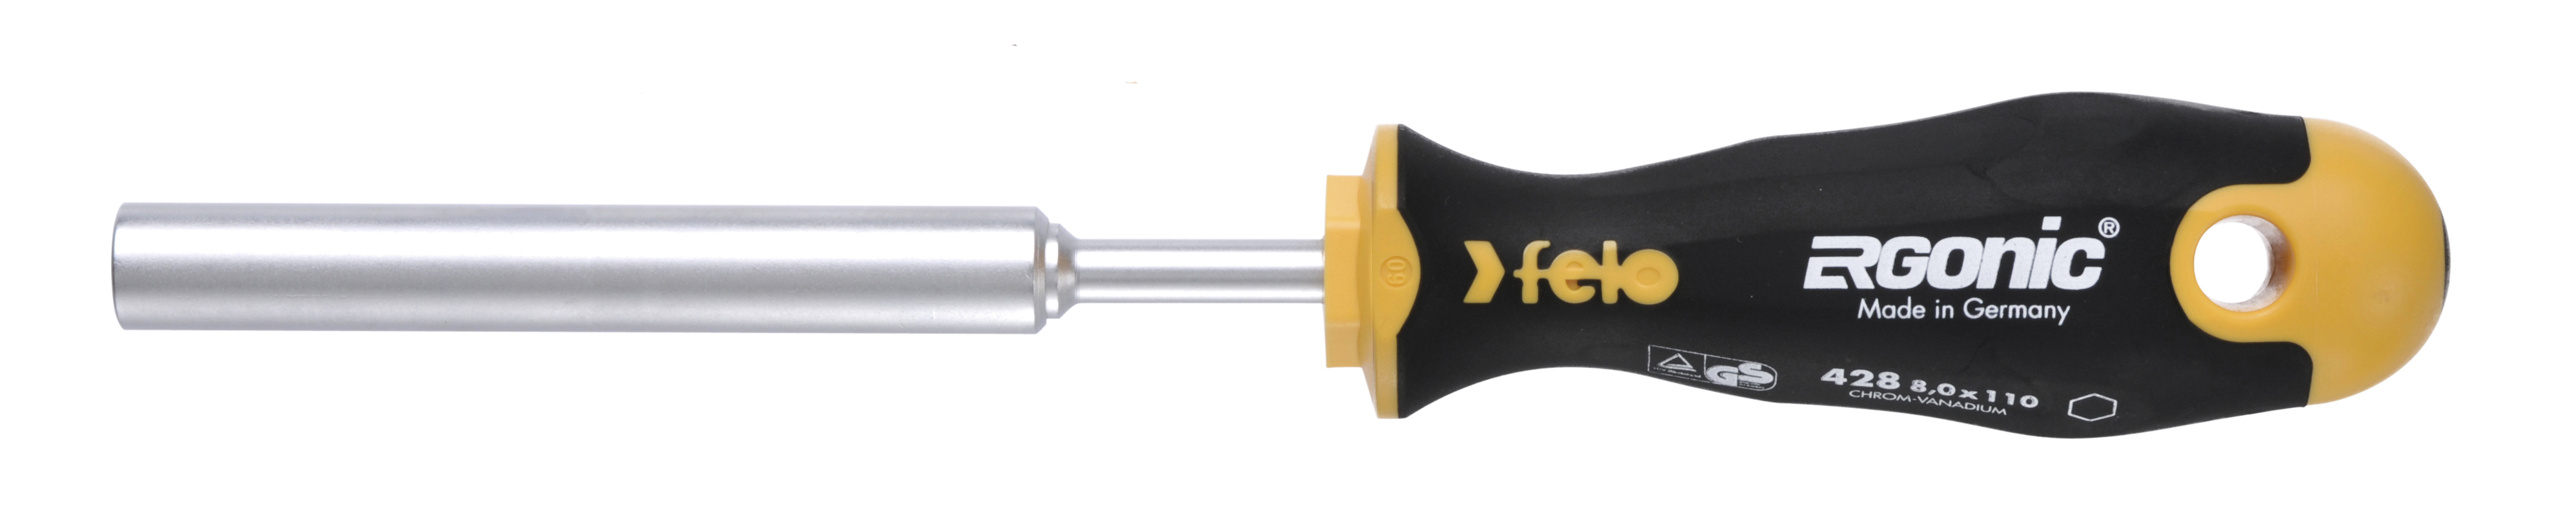 Отвертка Felo Ergonic M-TEC 42808030 торцевой ключ 8,0X110 диэлектрический ключ отвёртка izeltas 4773190110 1000v торцевой 11мм длина 230 мм